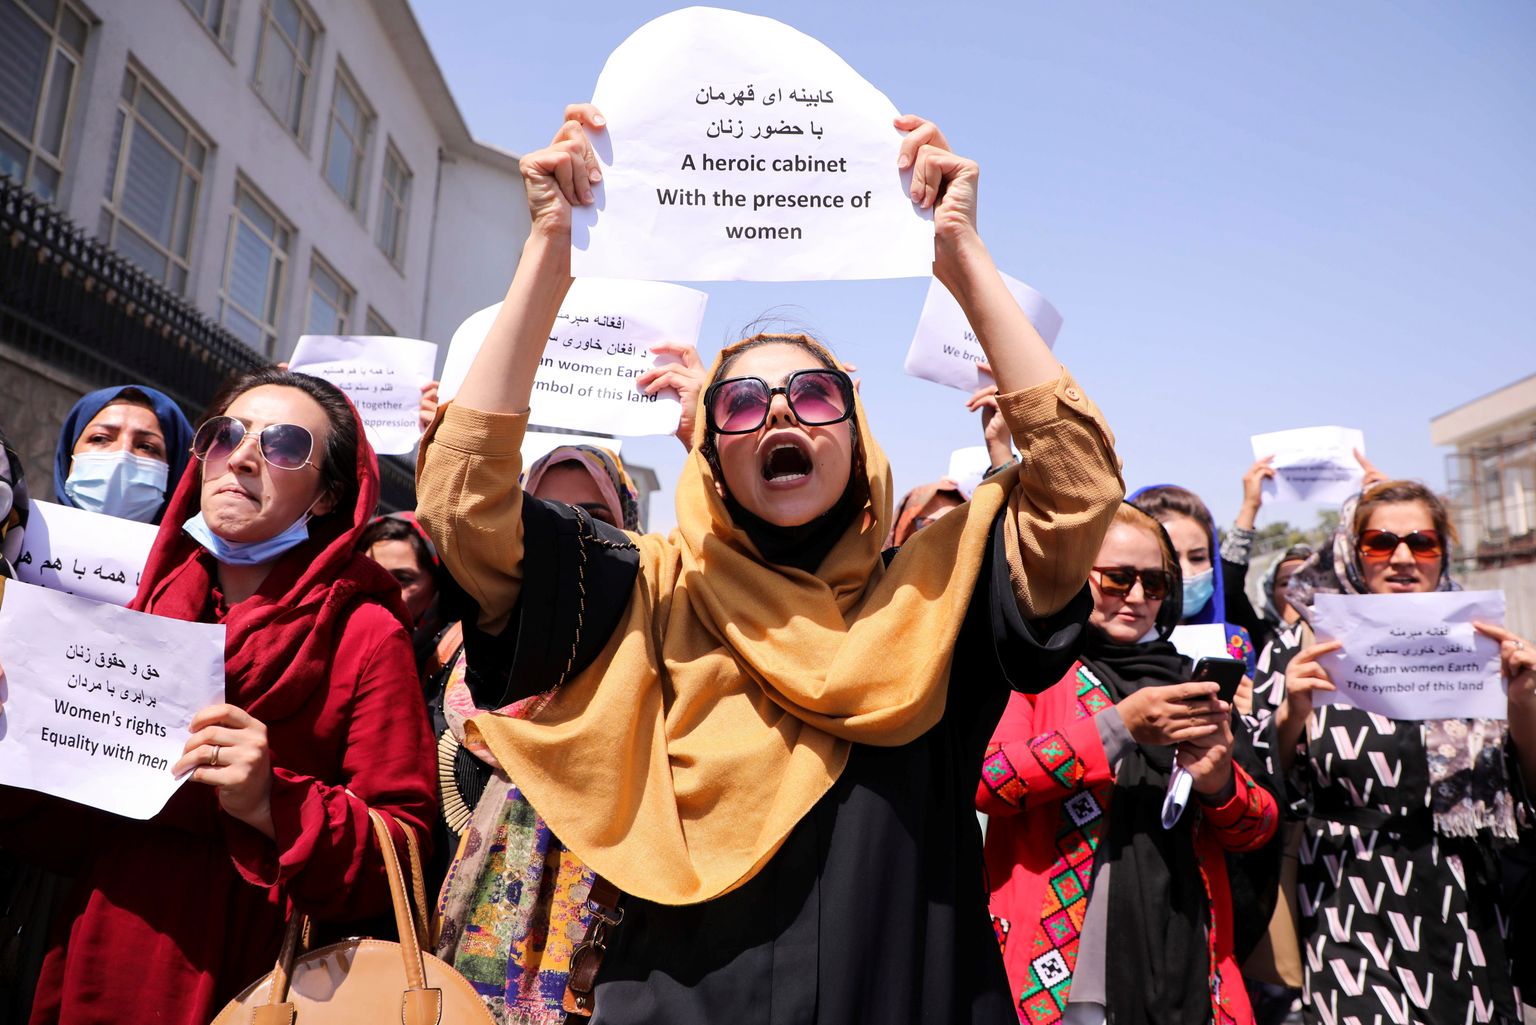 Naised Kabulis oma õigusi nõudmas.